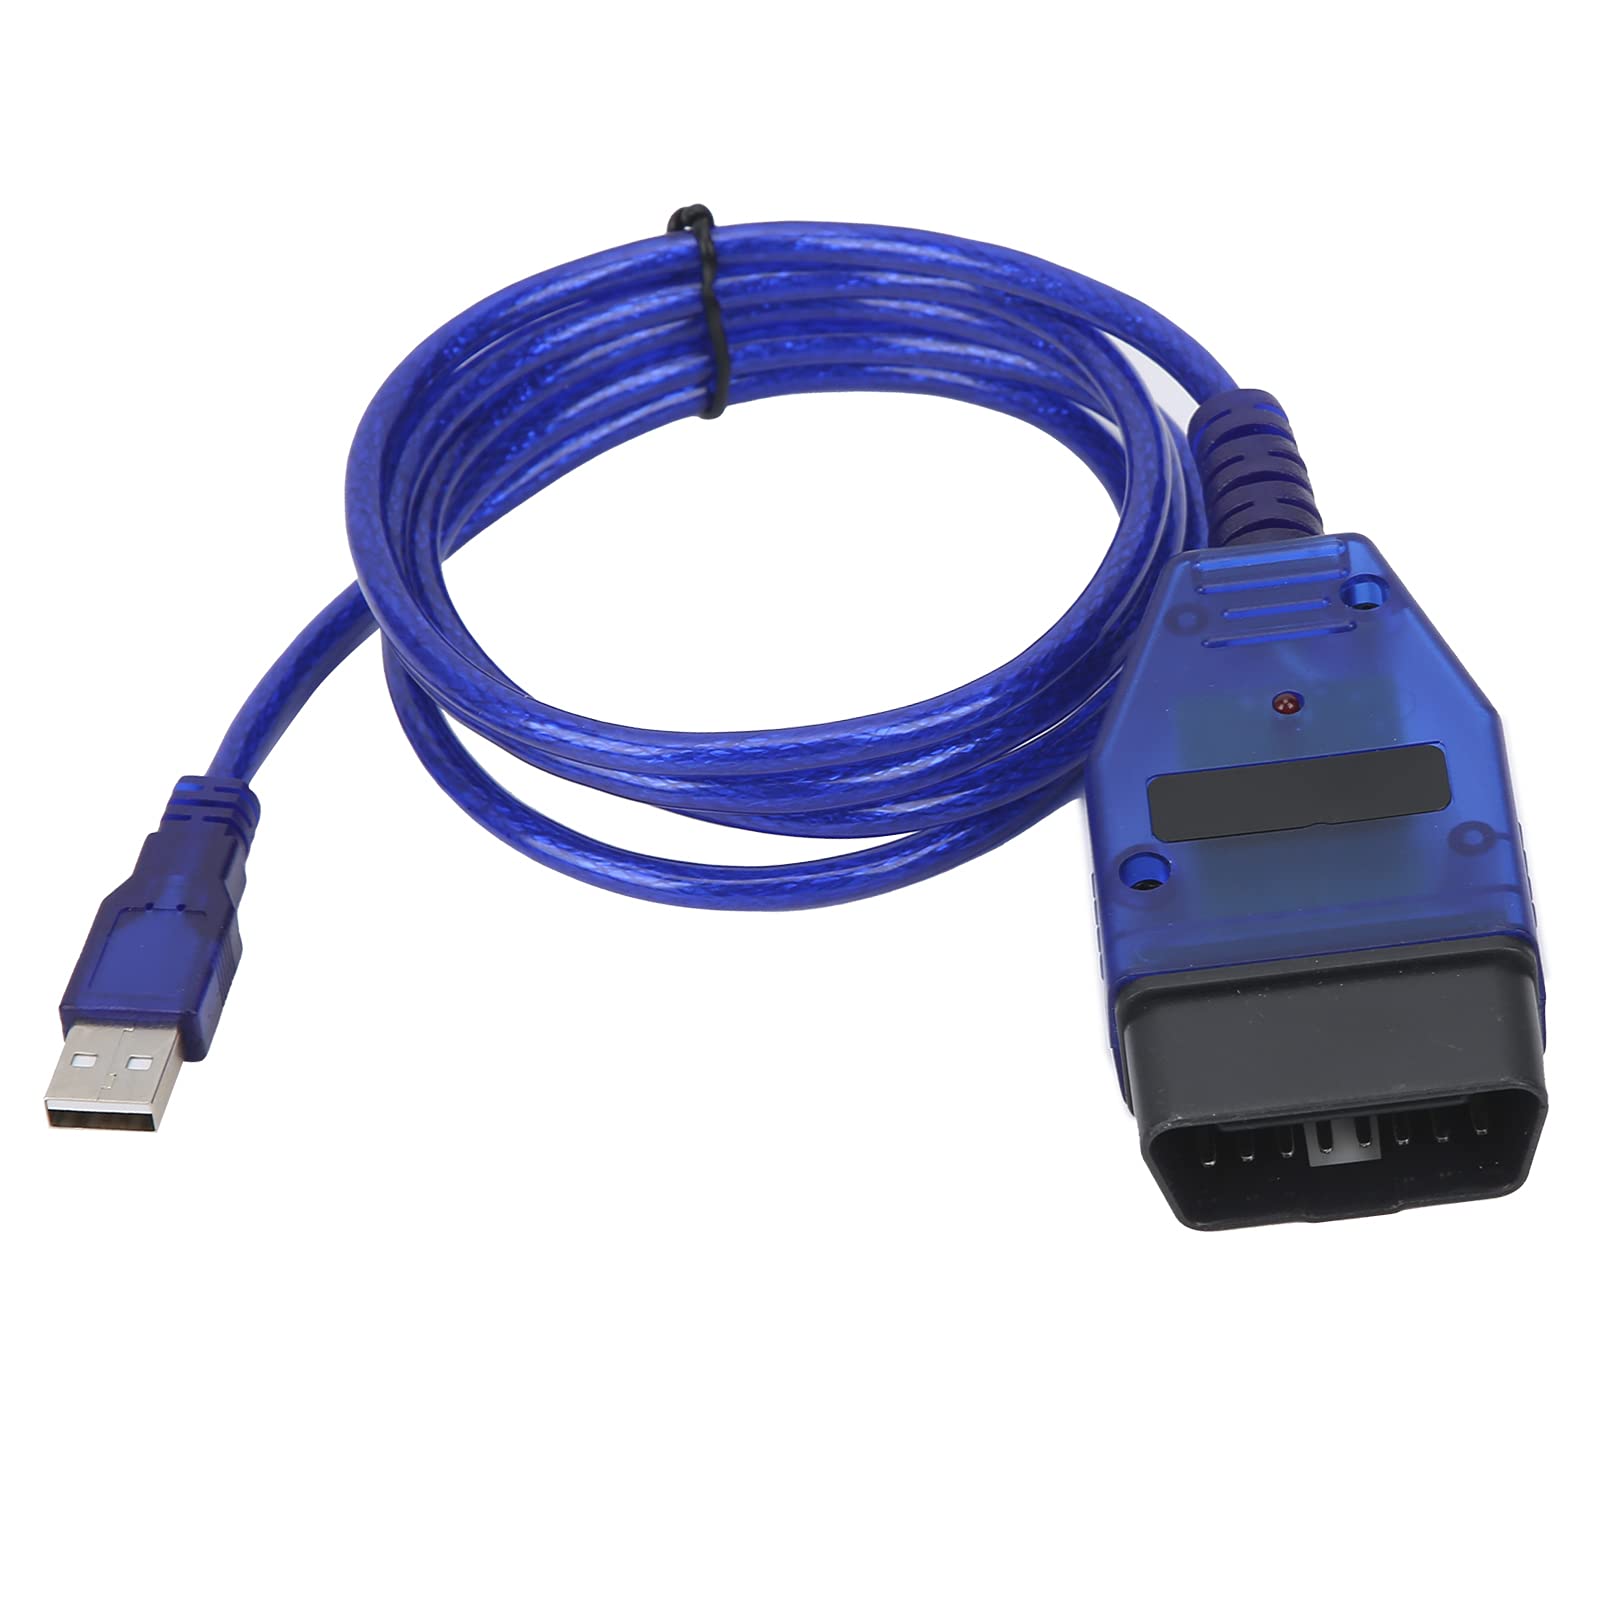 Professionelles OBD2-USB-Kabelscanner-Diagnose-Scan-Tool 409 Kfz-Diagnosetool, 3 Protokolle, kein Gleichstrom Erforderlich, Unterstützt Windows 98SE/ME/2000/NT/XP von Cerlingwee